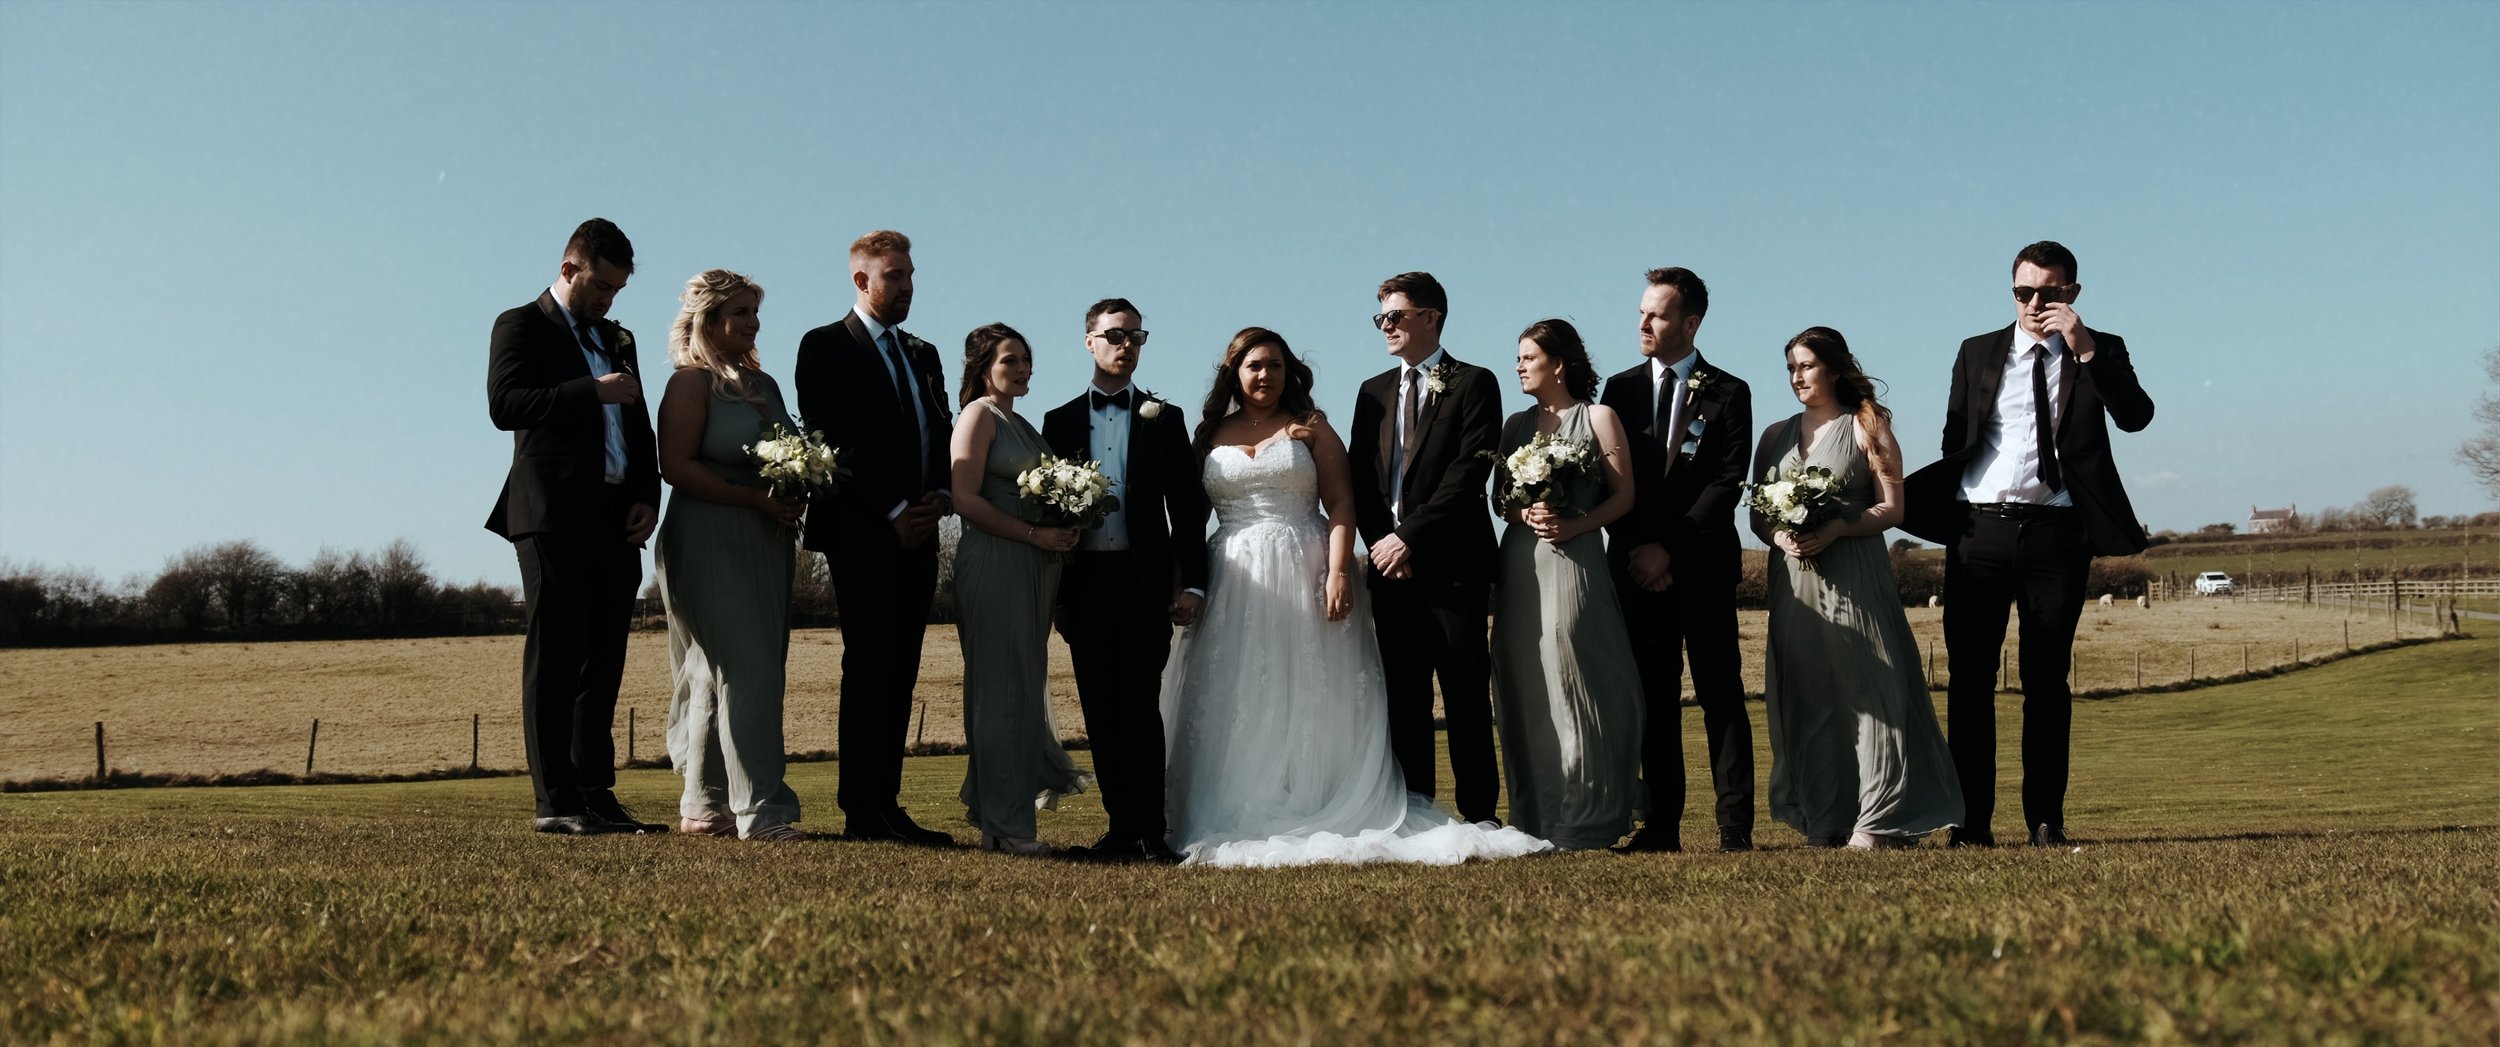 Oldwalls Gower Wedding Videography by Ben Holbrook Films5.jpg